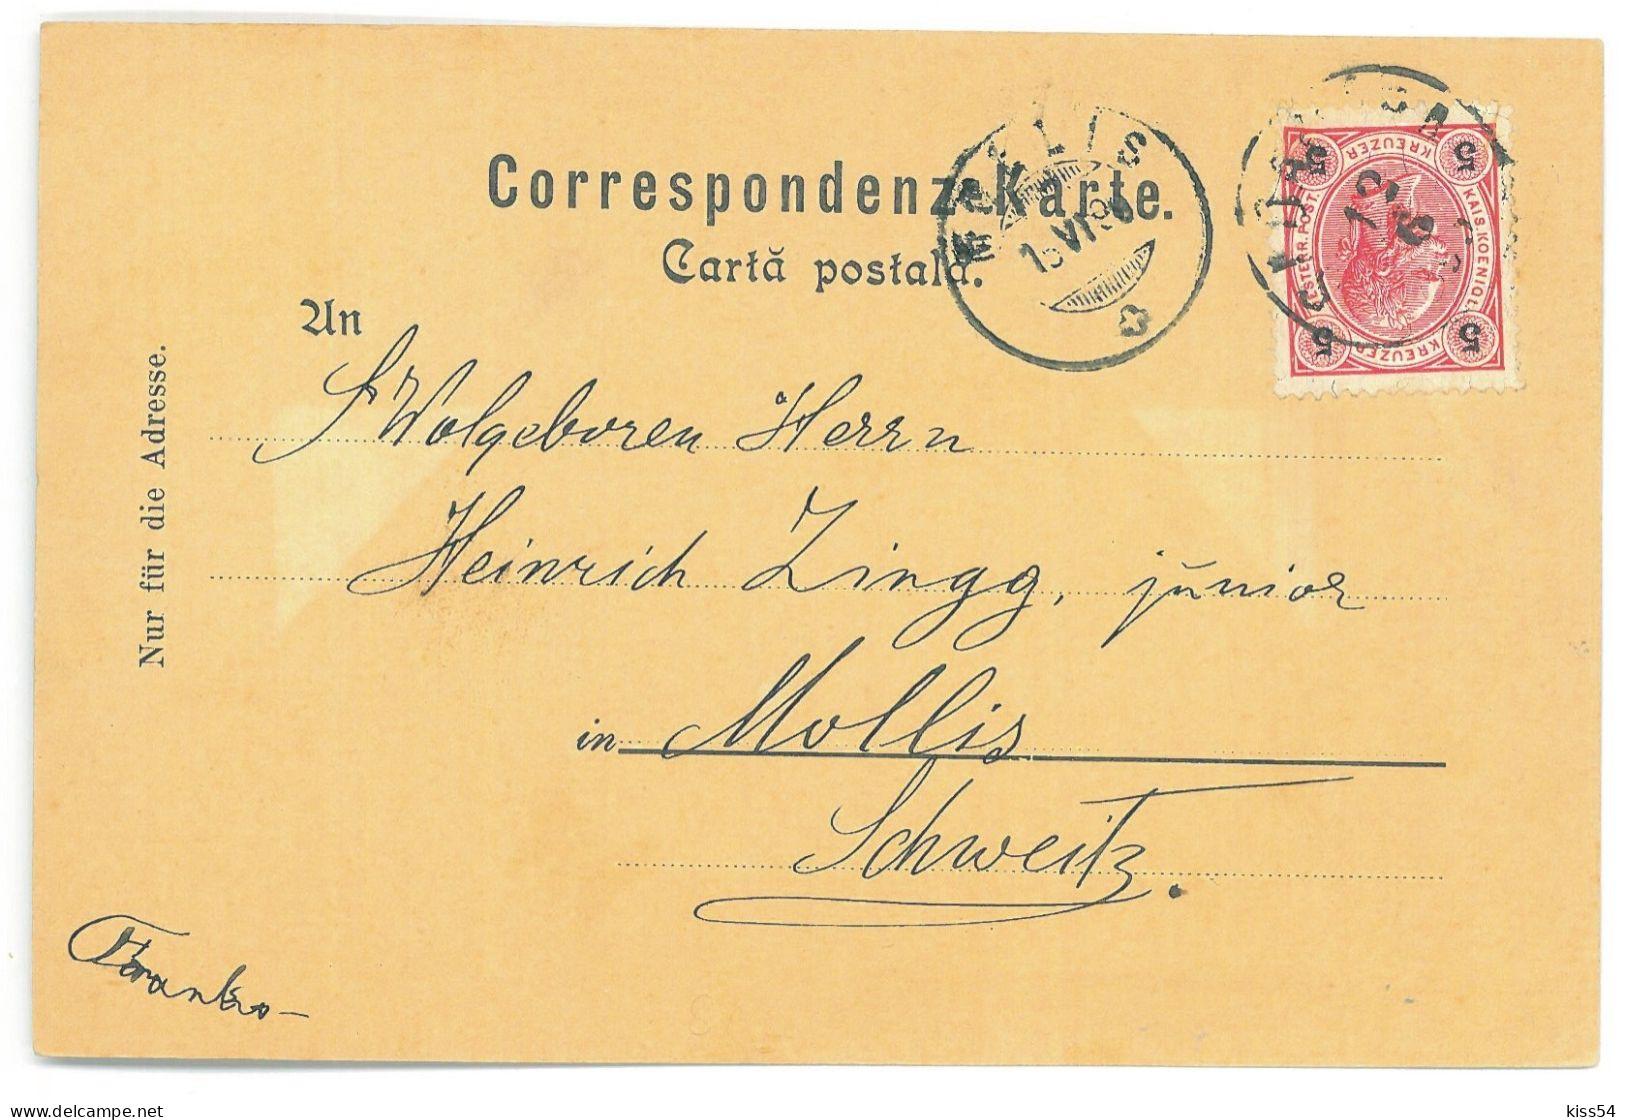 RO - 25327 SADAGURA, Bucovina, High School, Litho, Romania - Old Postcard - Used - 1898 - Romania